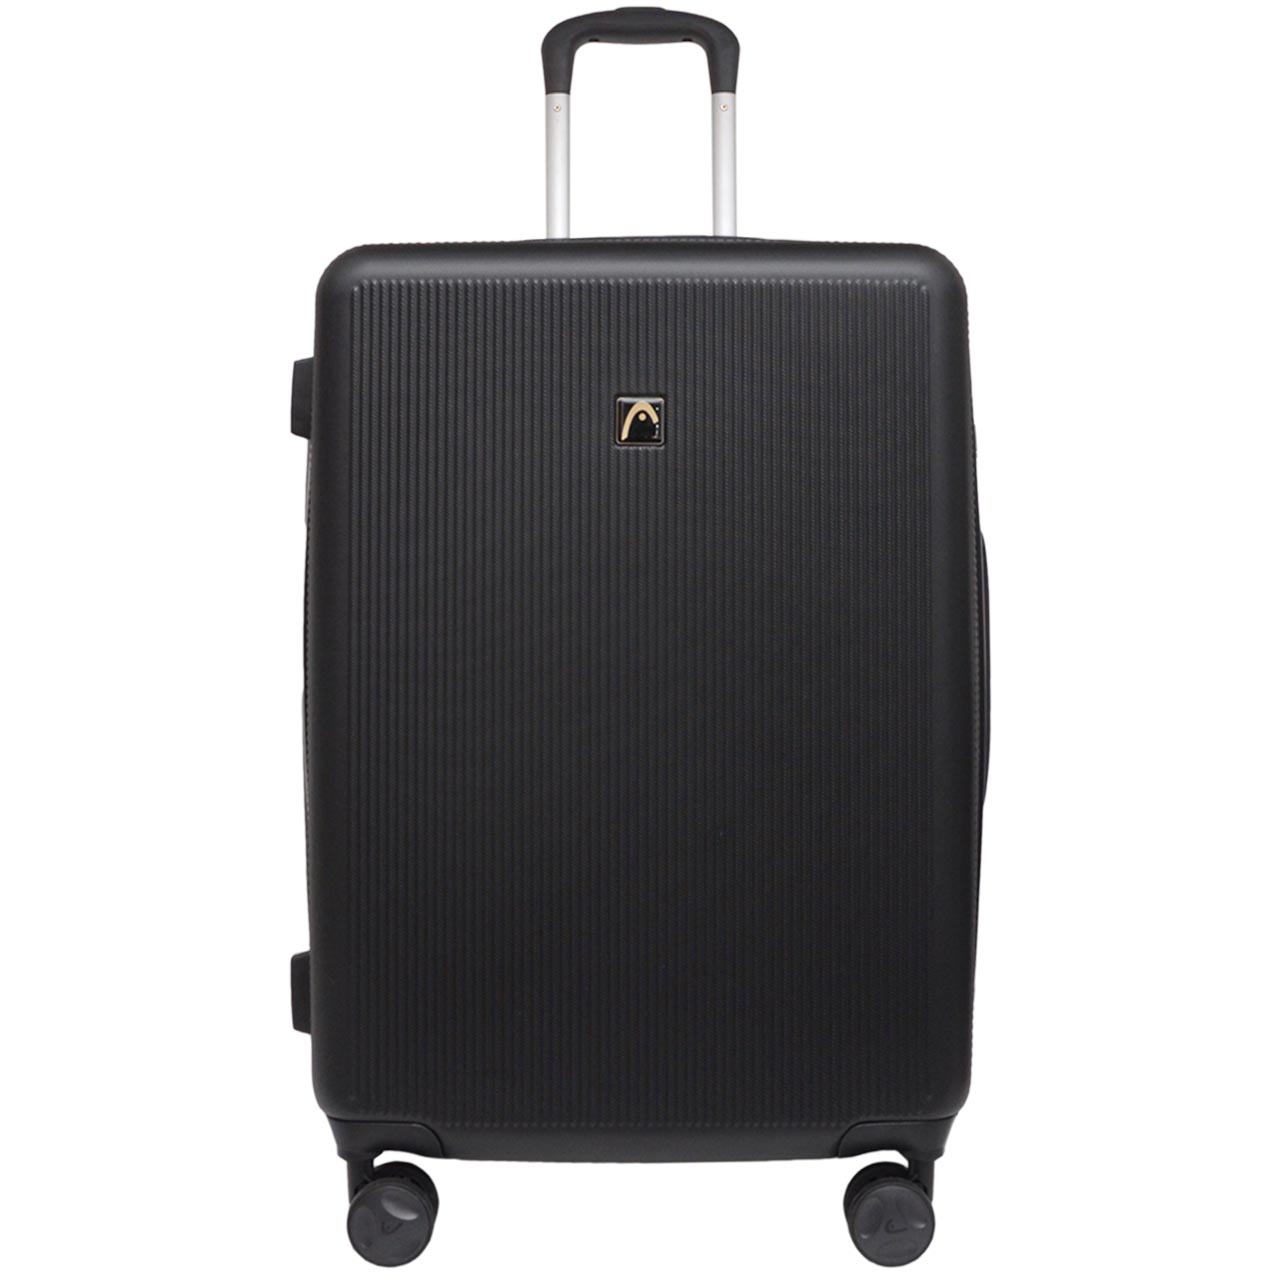 چمدان هد مدل HL 006 سایز متوسط -  - 1